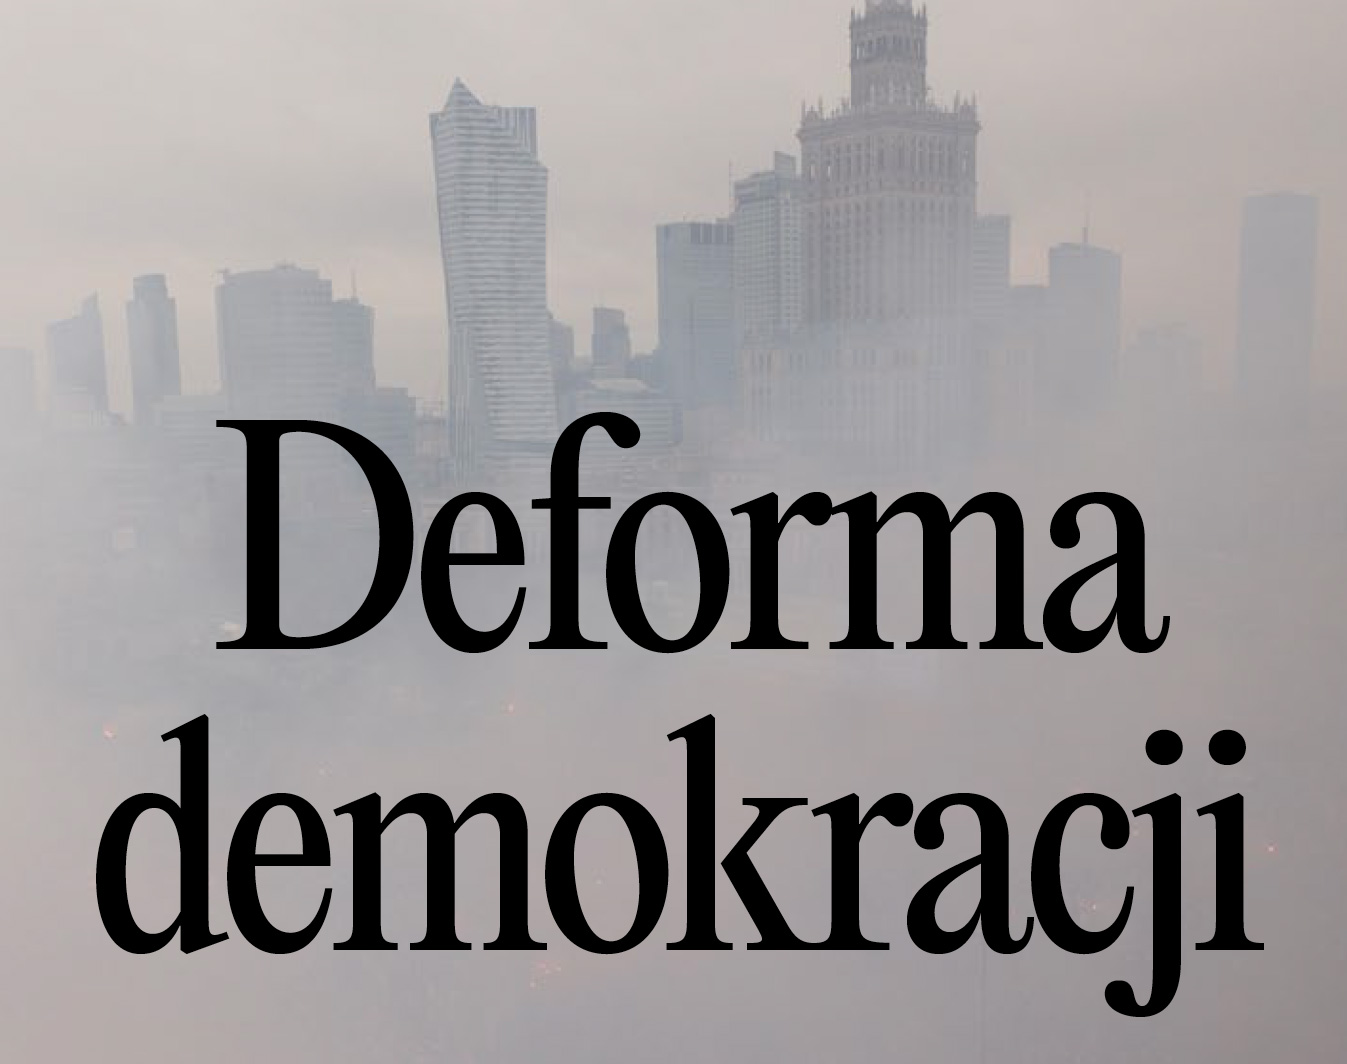 deformationofdemocracy.com